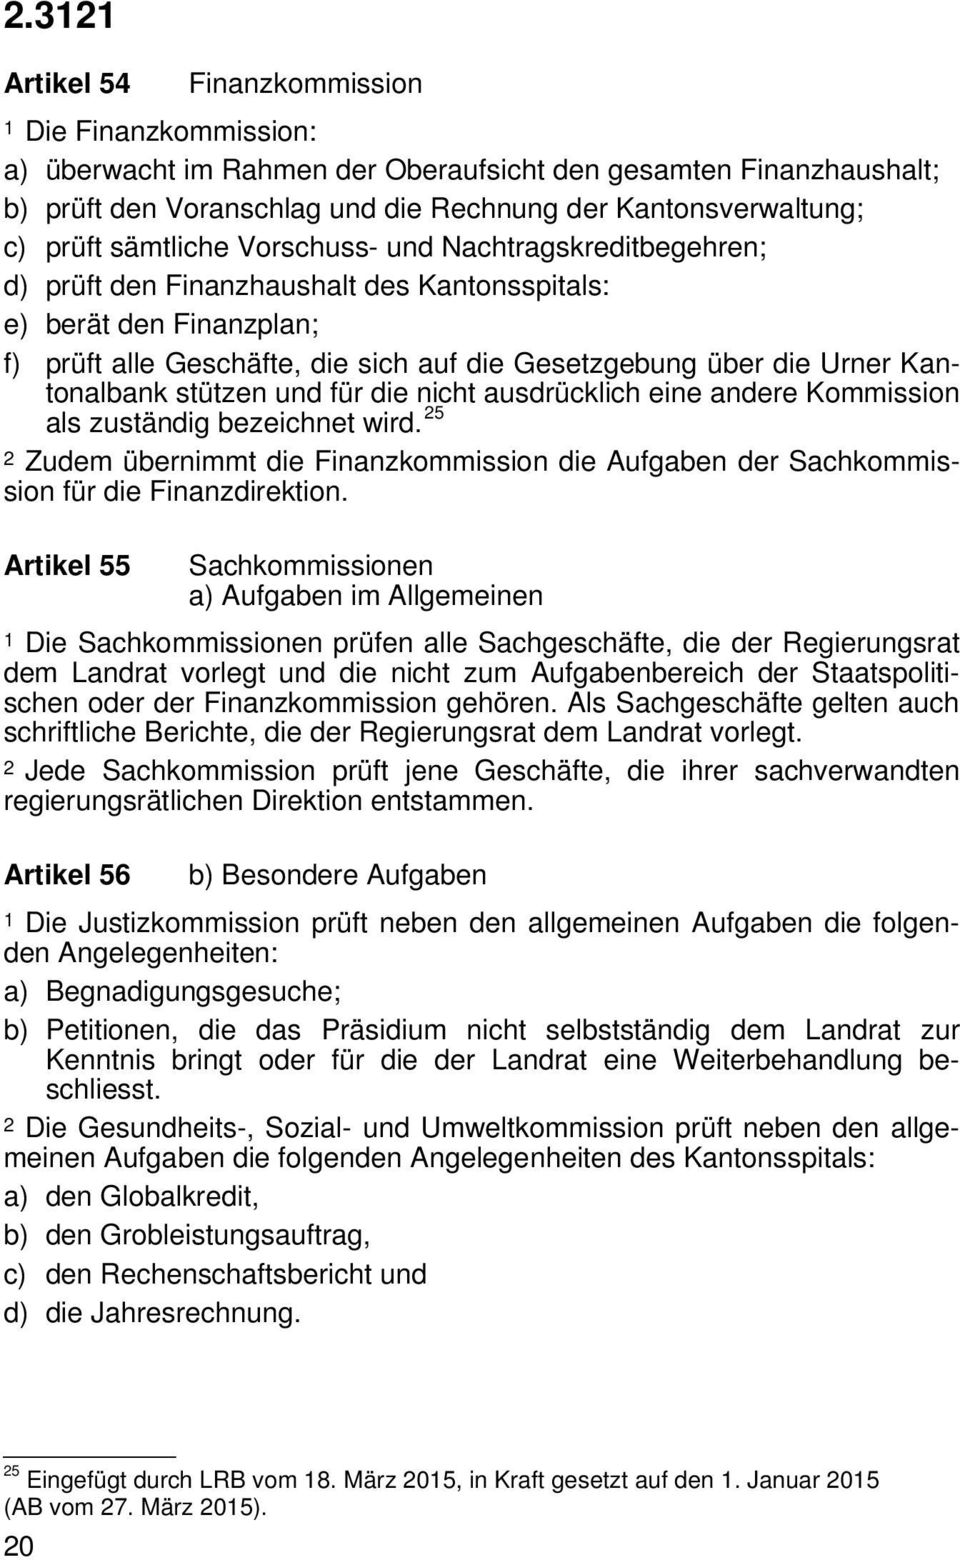 Kantonalbank stützen und für die nicht ausdrücklich eine andere Kommission als zuständig bezeichnet wird.